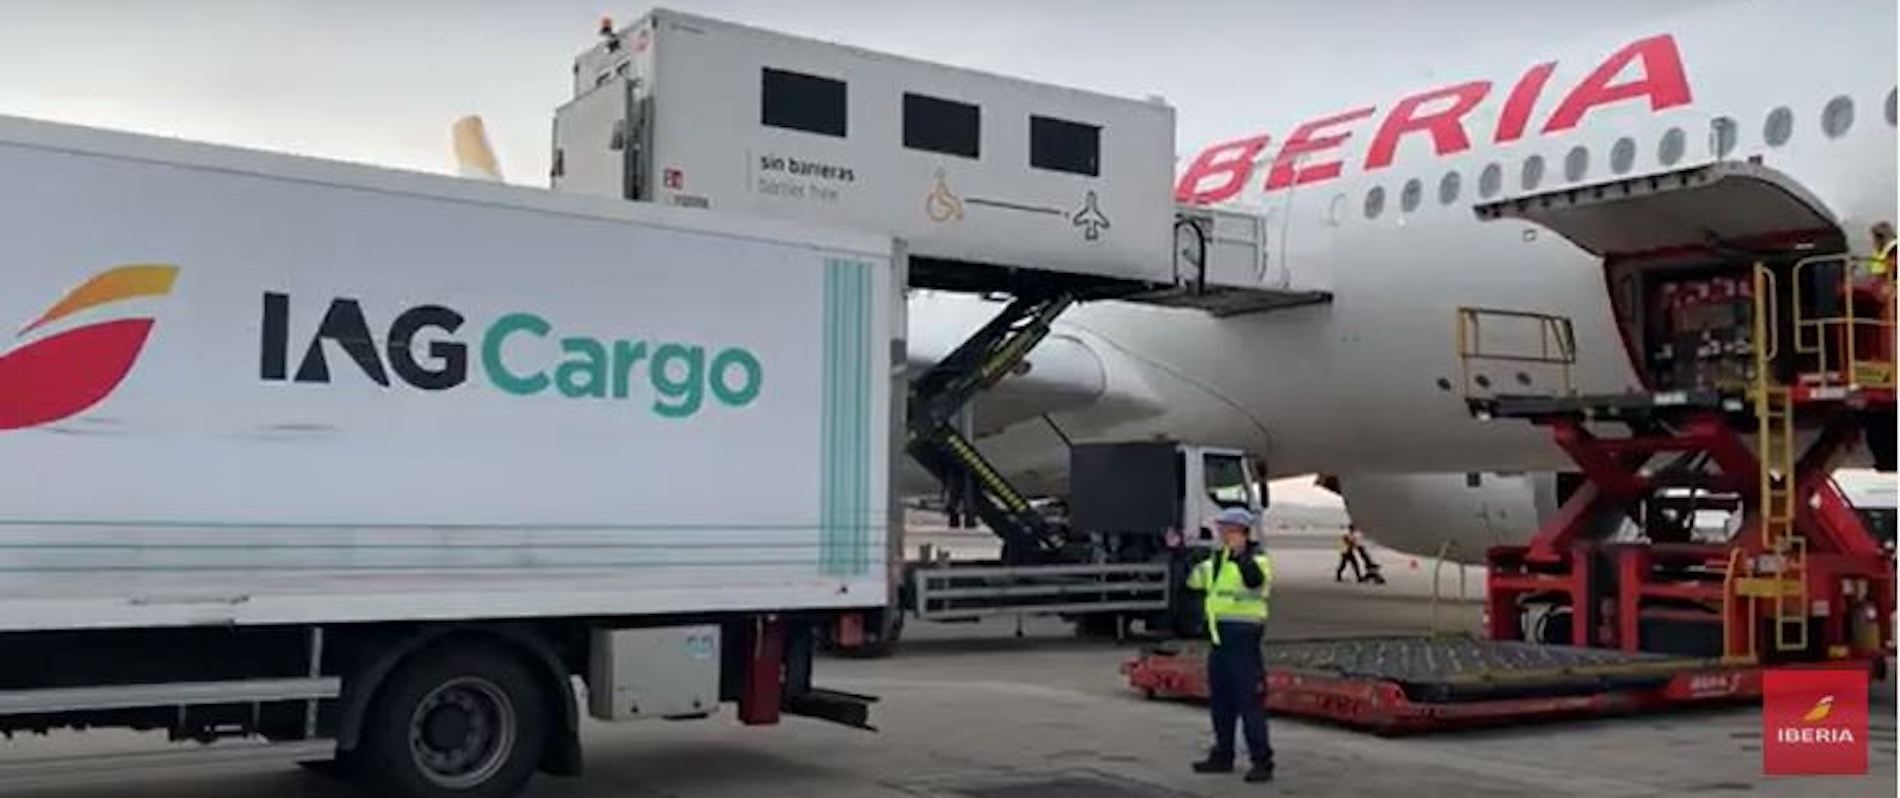 IAG Cargo mantiene la cadena de frío en el transporte y la manipulación aeroportuaria de estas flores.